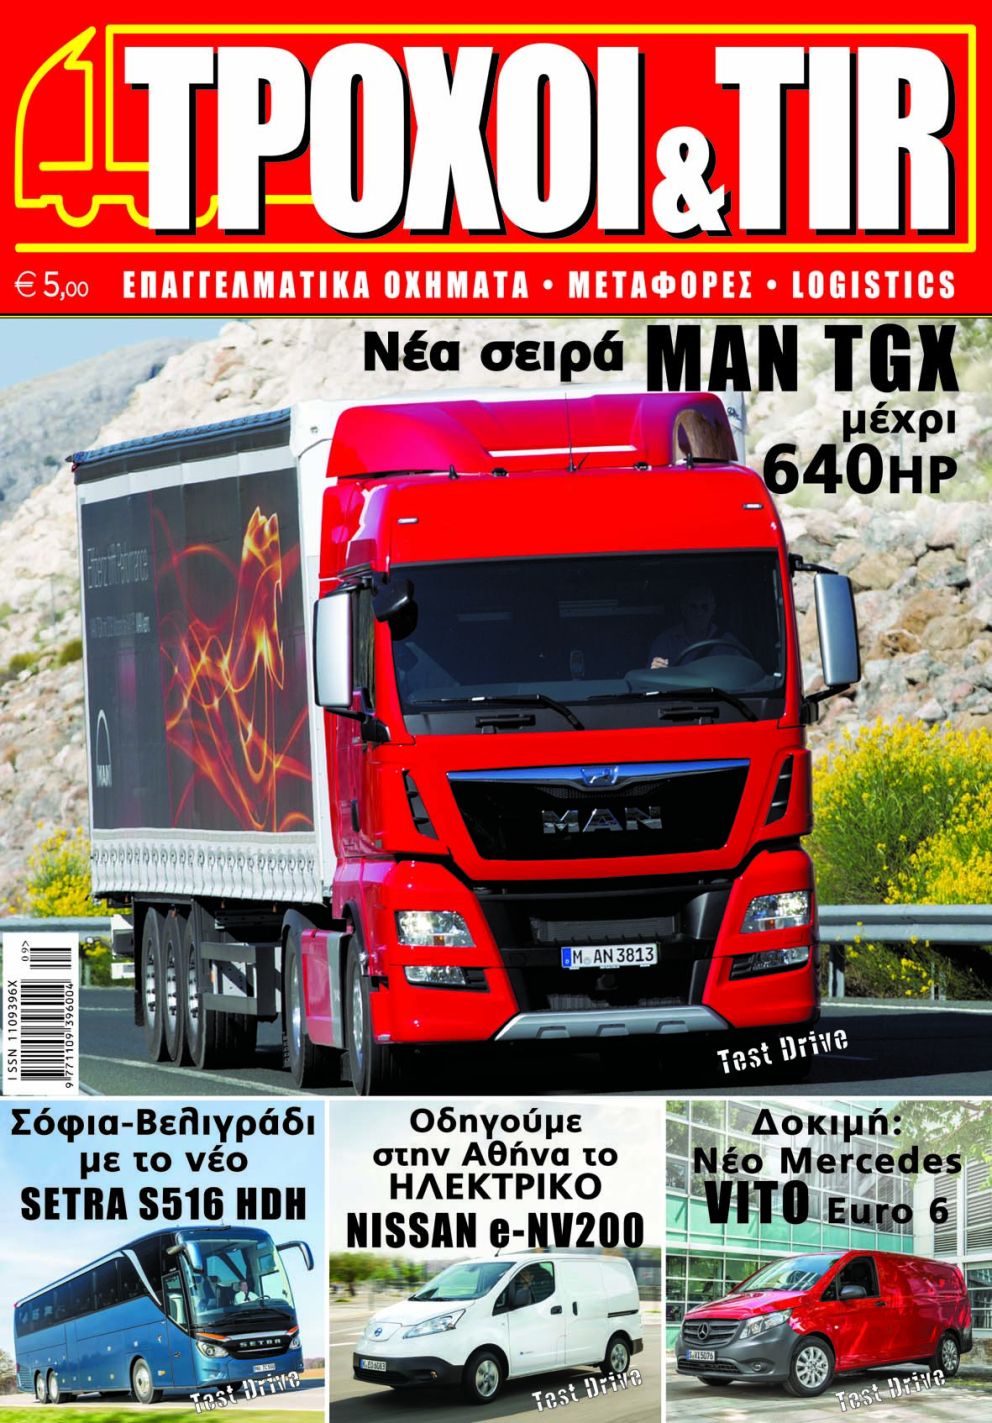 troxoi & tir issue # 317 - September 2014